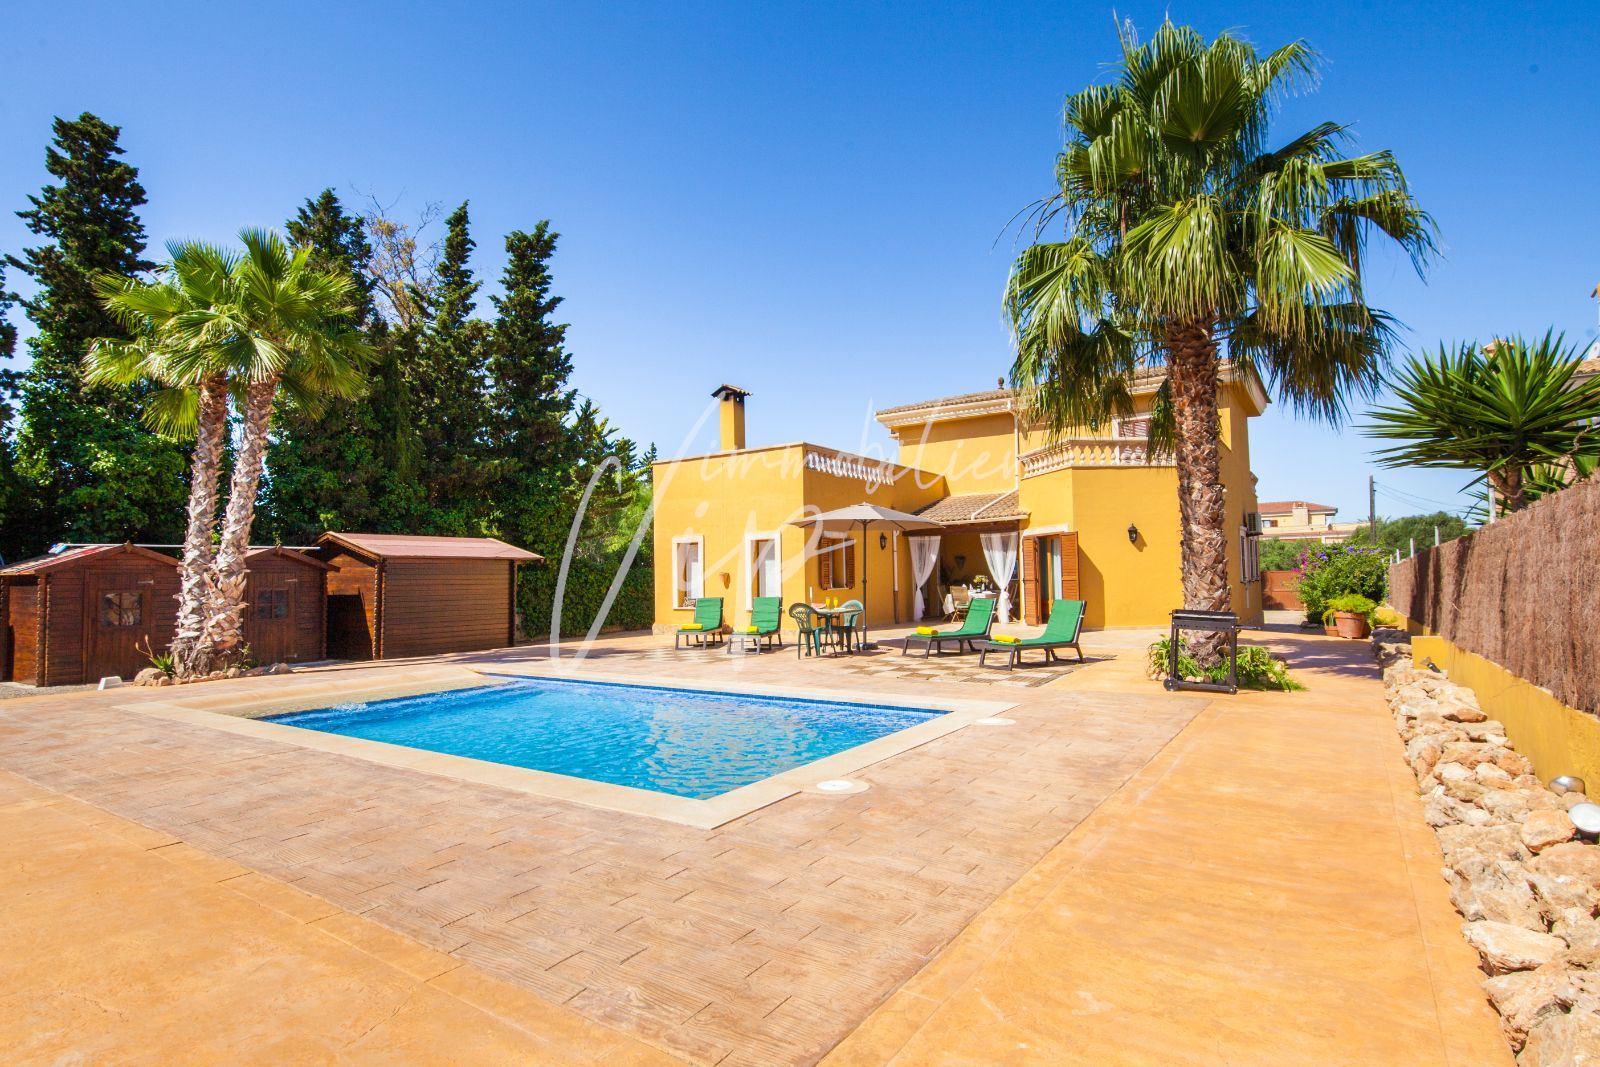 Villa in einem Wohngebiet im Süden von Palma